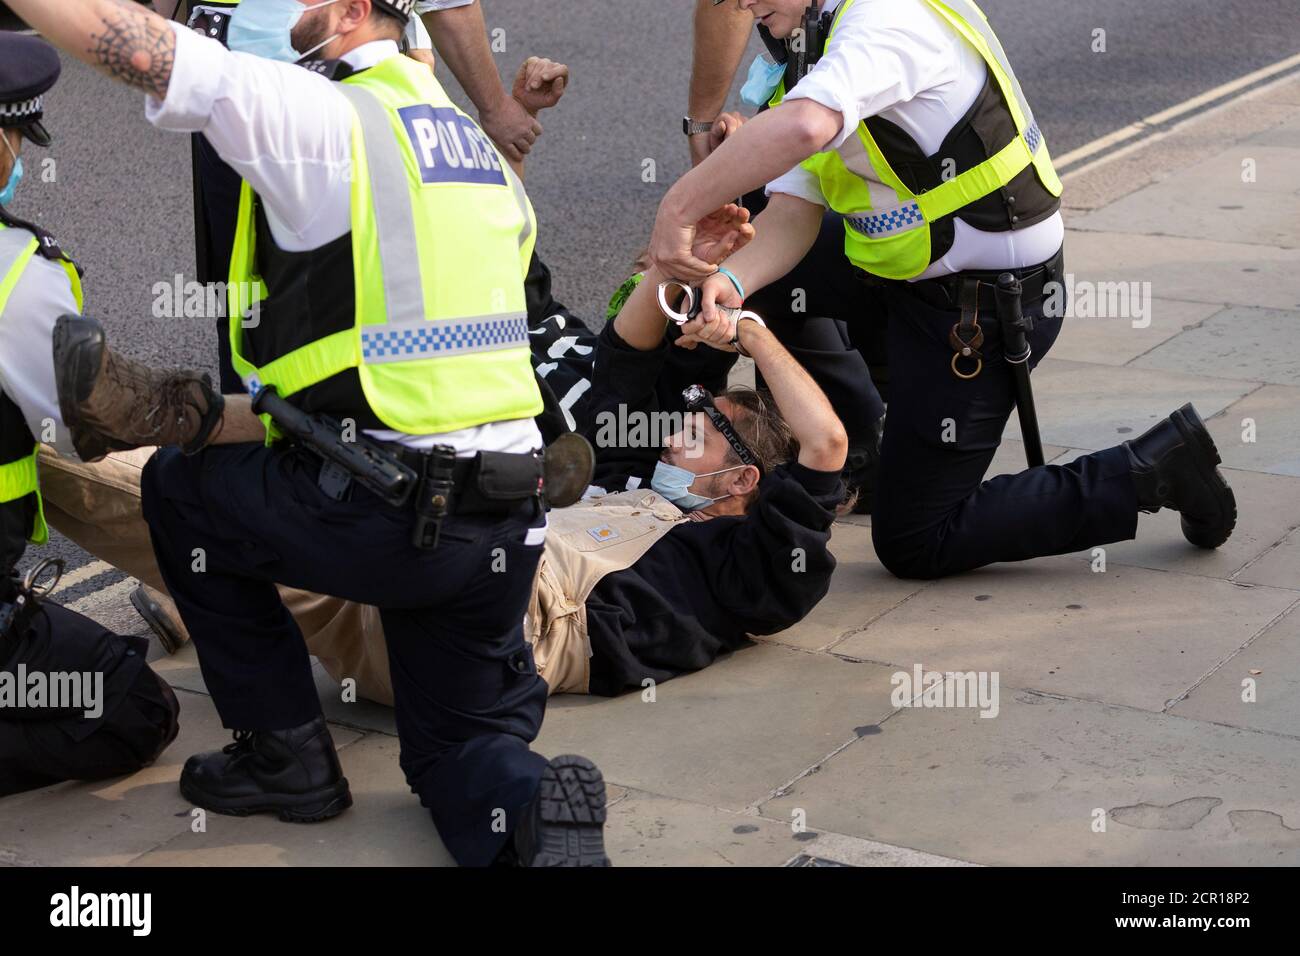 Verhaftete Protestierende, die vor dem Parlament mit Handschellen auf dem Boden gefesselt waren, Demonstration der Extinction Rebellion, London, 10. September 2020 Stockfoto